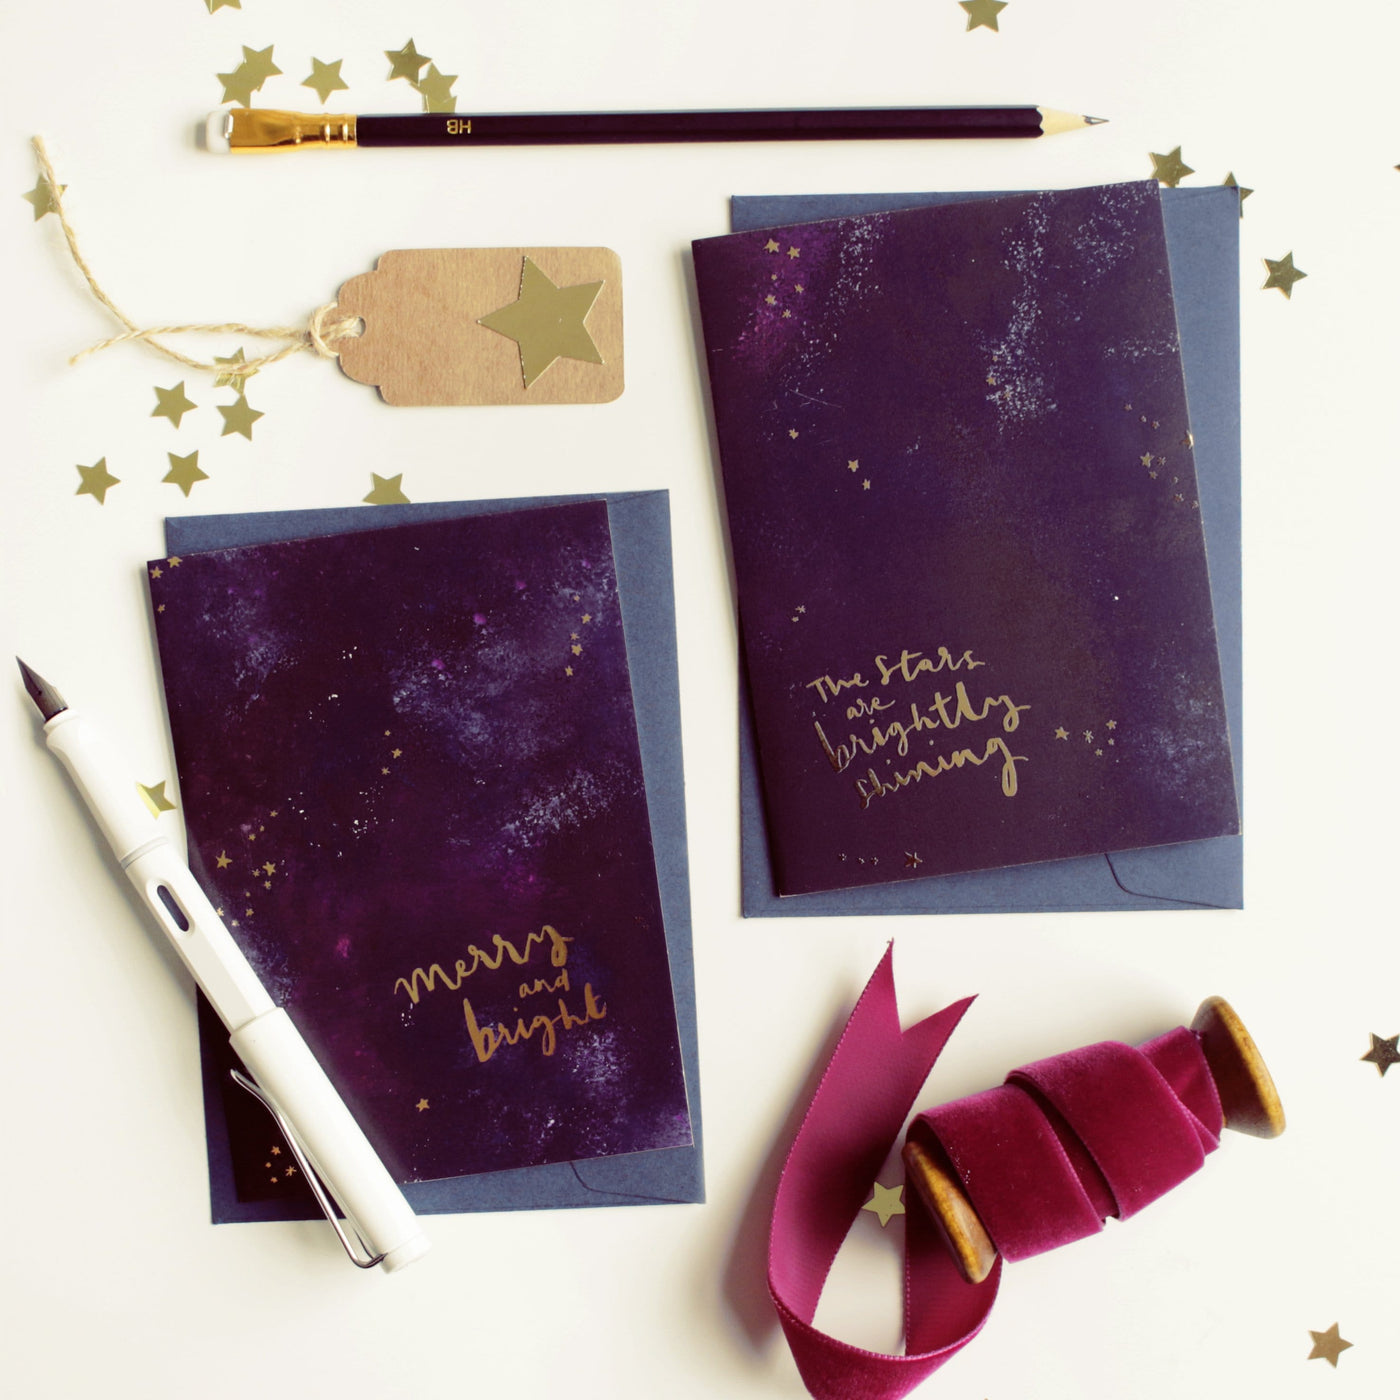 Magical Galaxy Christmas Card - “Brightly Shining” - Annie Dornan-Smith Design